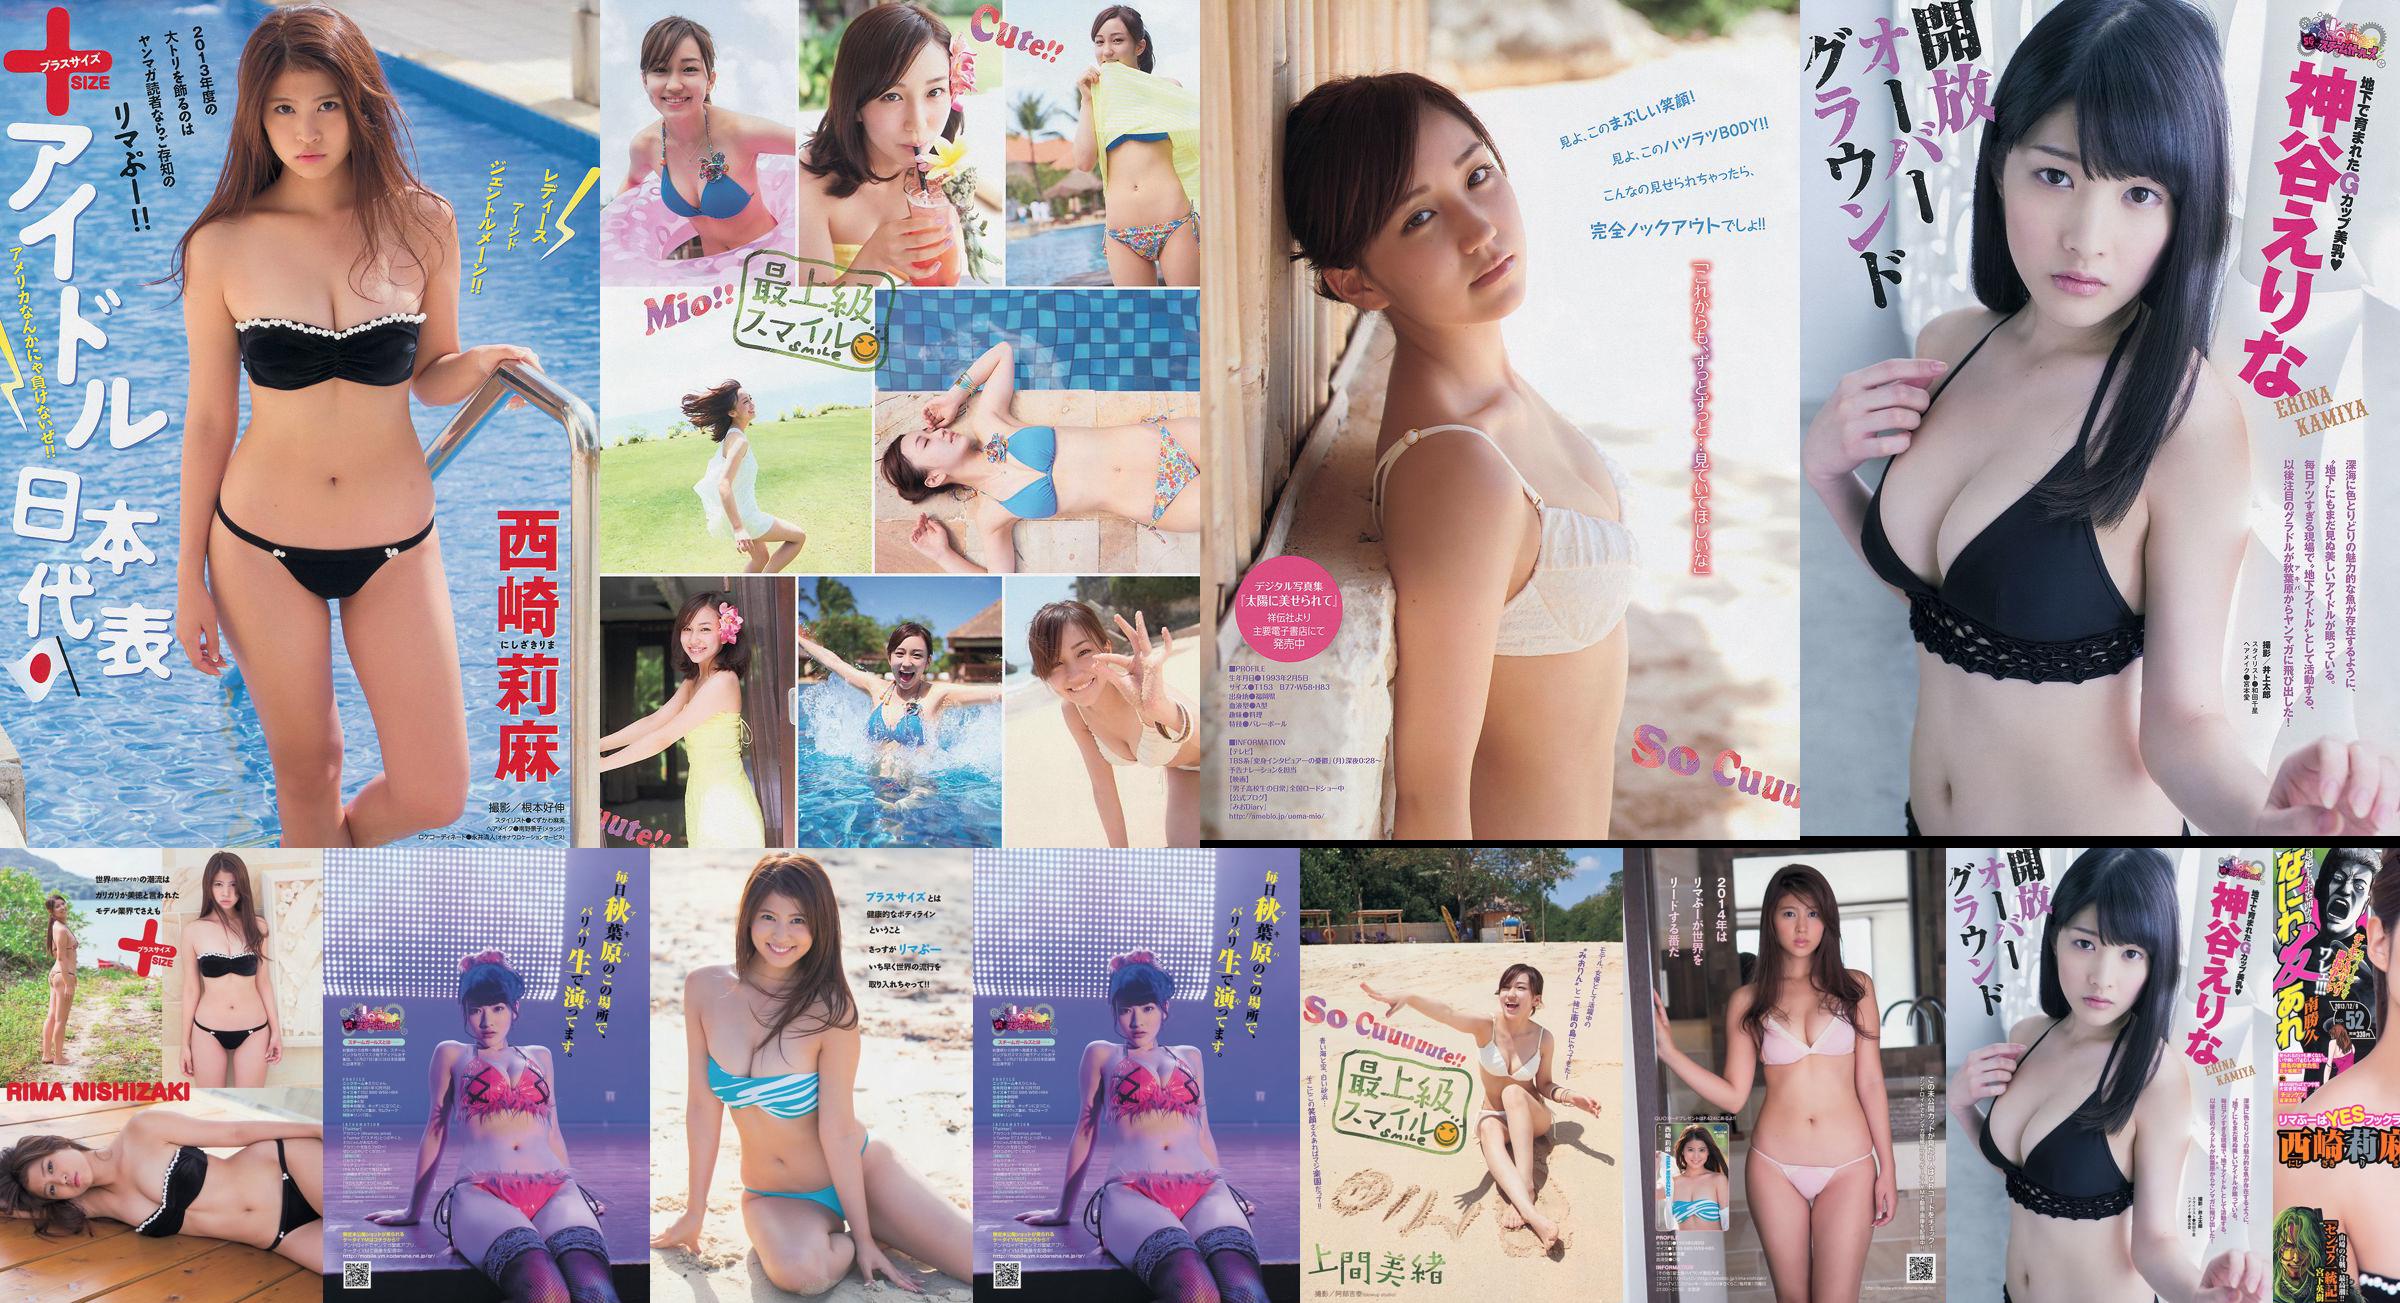 [Young Magazine] Rima Nishizaki Mio Uema Erina Kamiya 2013 No.52 Photo Moshi No.be7184 Page 1